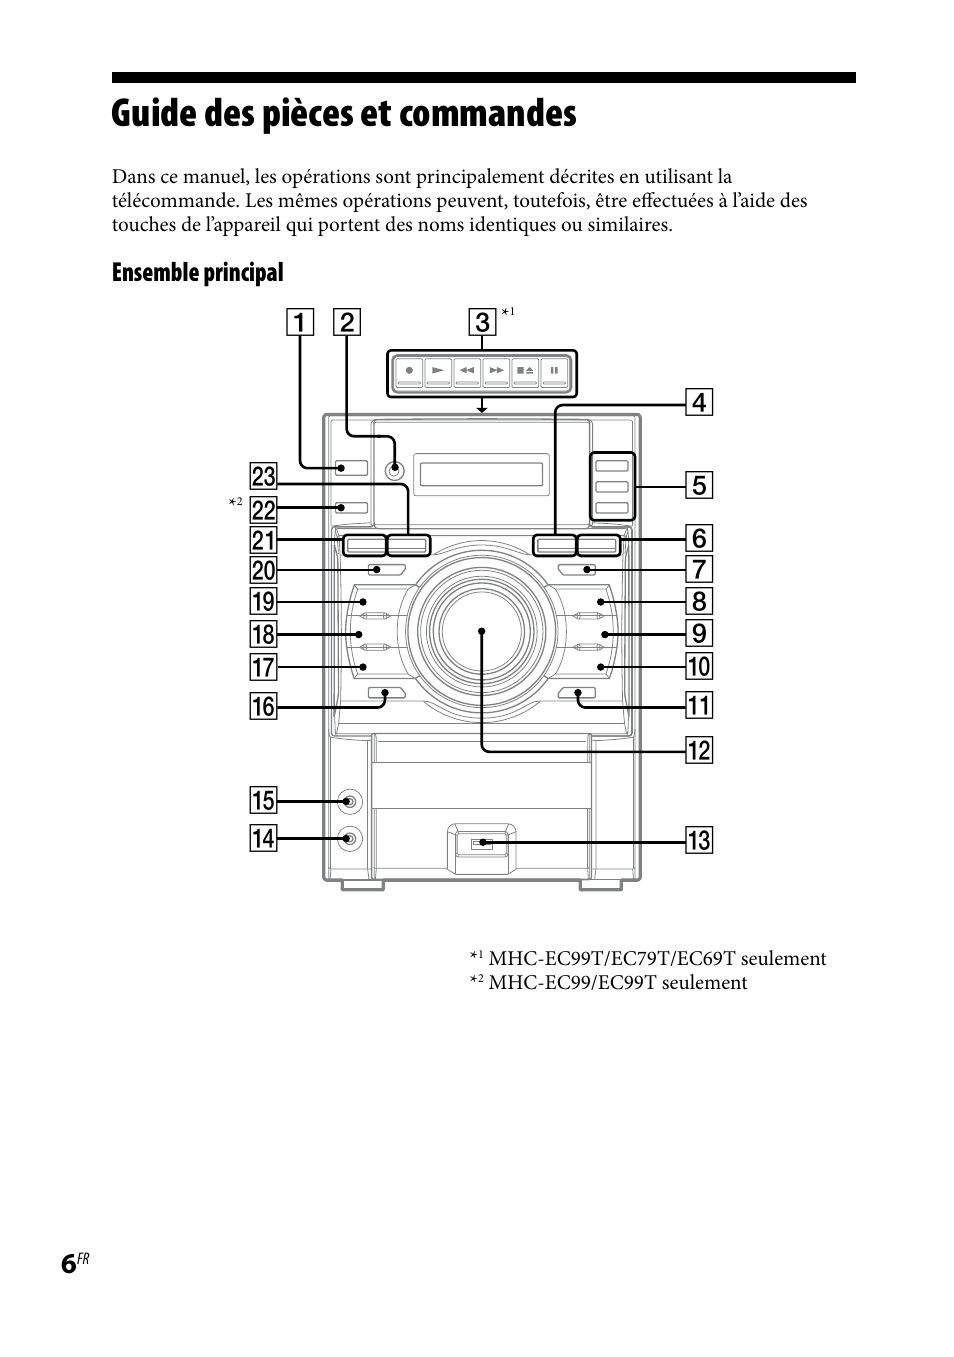 Guide des pièces et commandes, Ensemble principal | Sony MHC-EC69 Manuel d'utilisation | Page 6 / 44